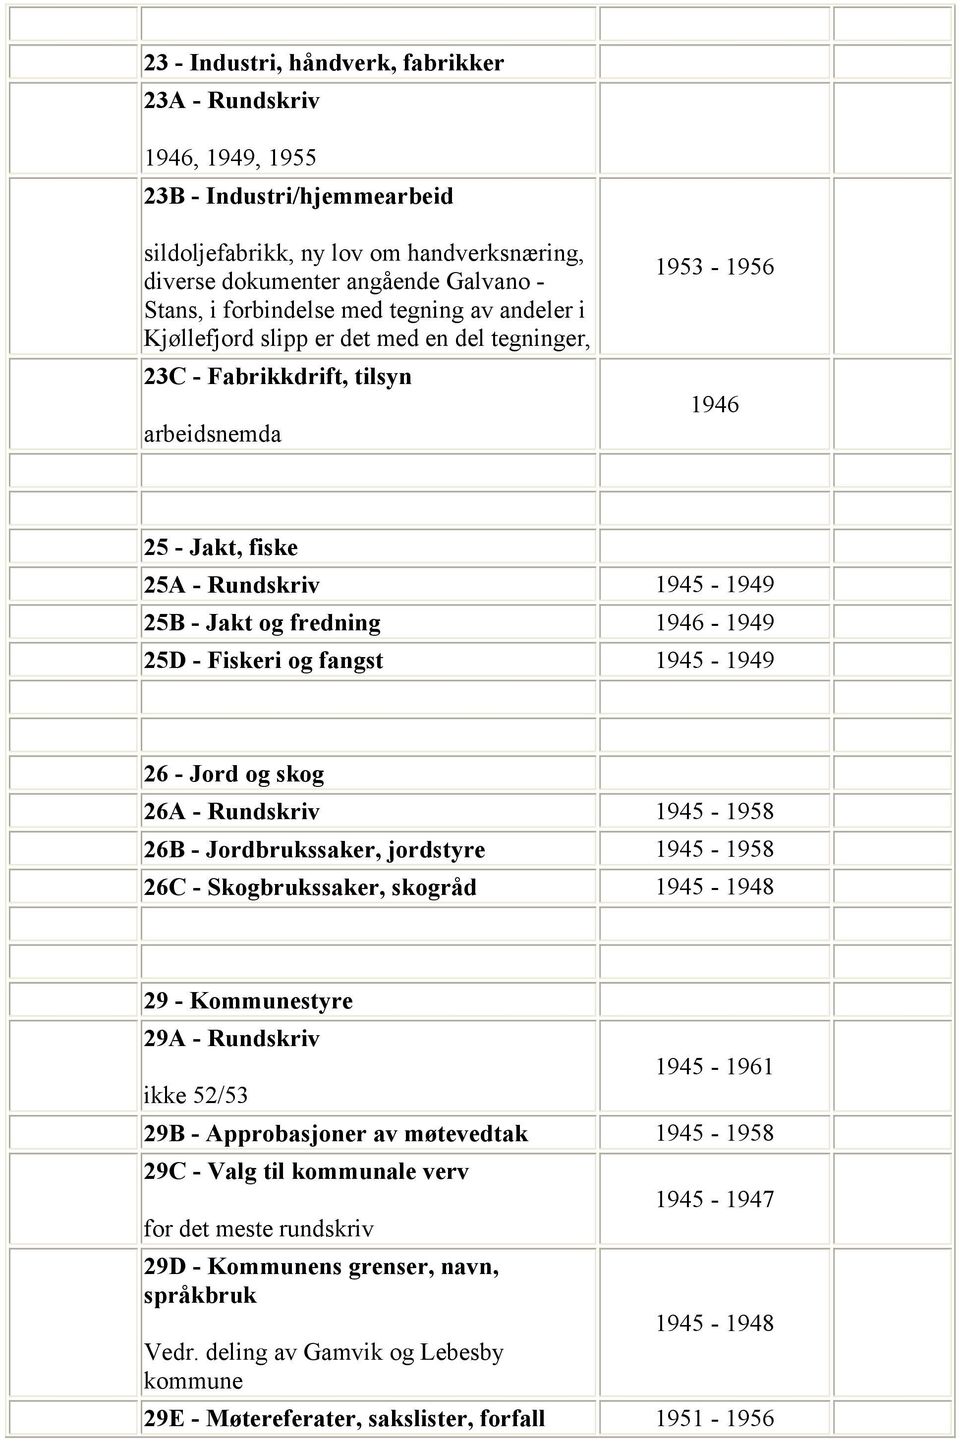 1946-1949 25D - Fiskeri og fangst 1945-1949 26 - Jord og skog 26A - Rundskriv 1945-1958 26B - Jordbrukssaker, jordstyre 1945-1958 26C - Skogbrukssaker, skogråd 1945-1948 29 - Kommunestyre 29A -